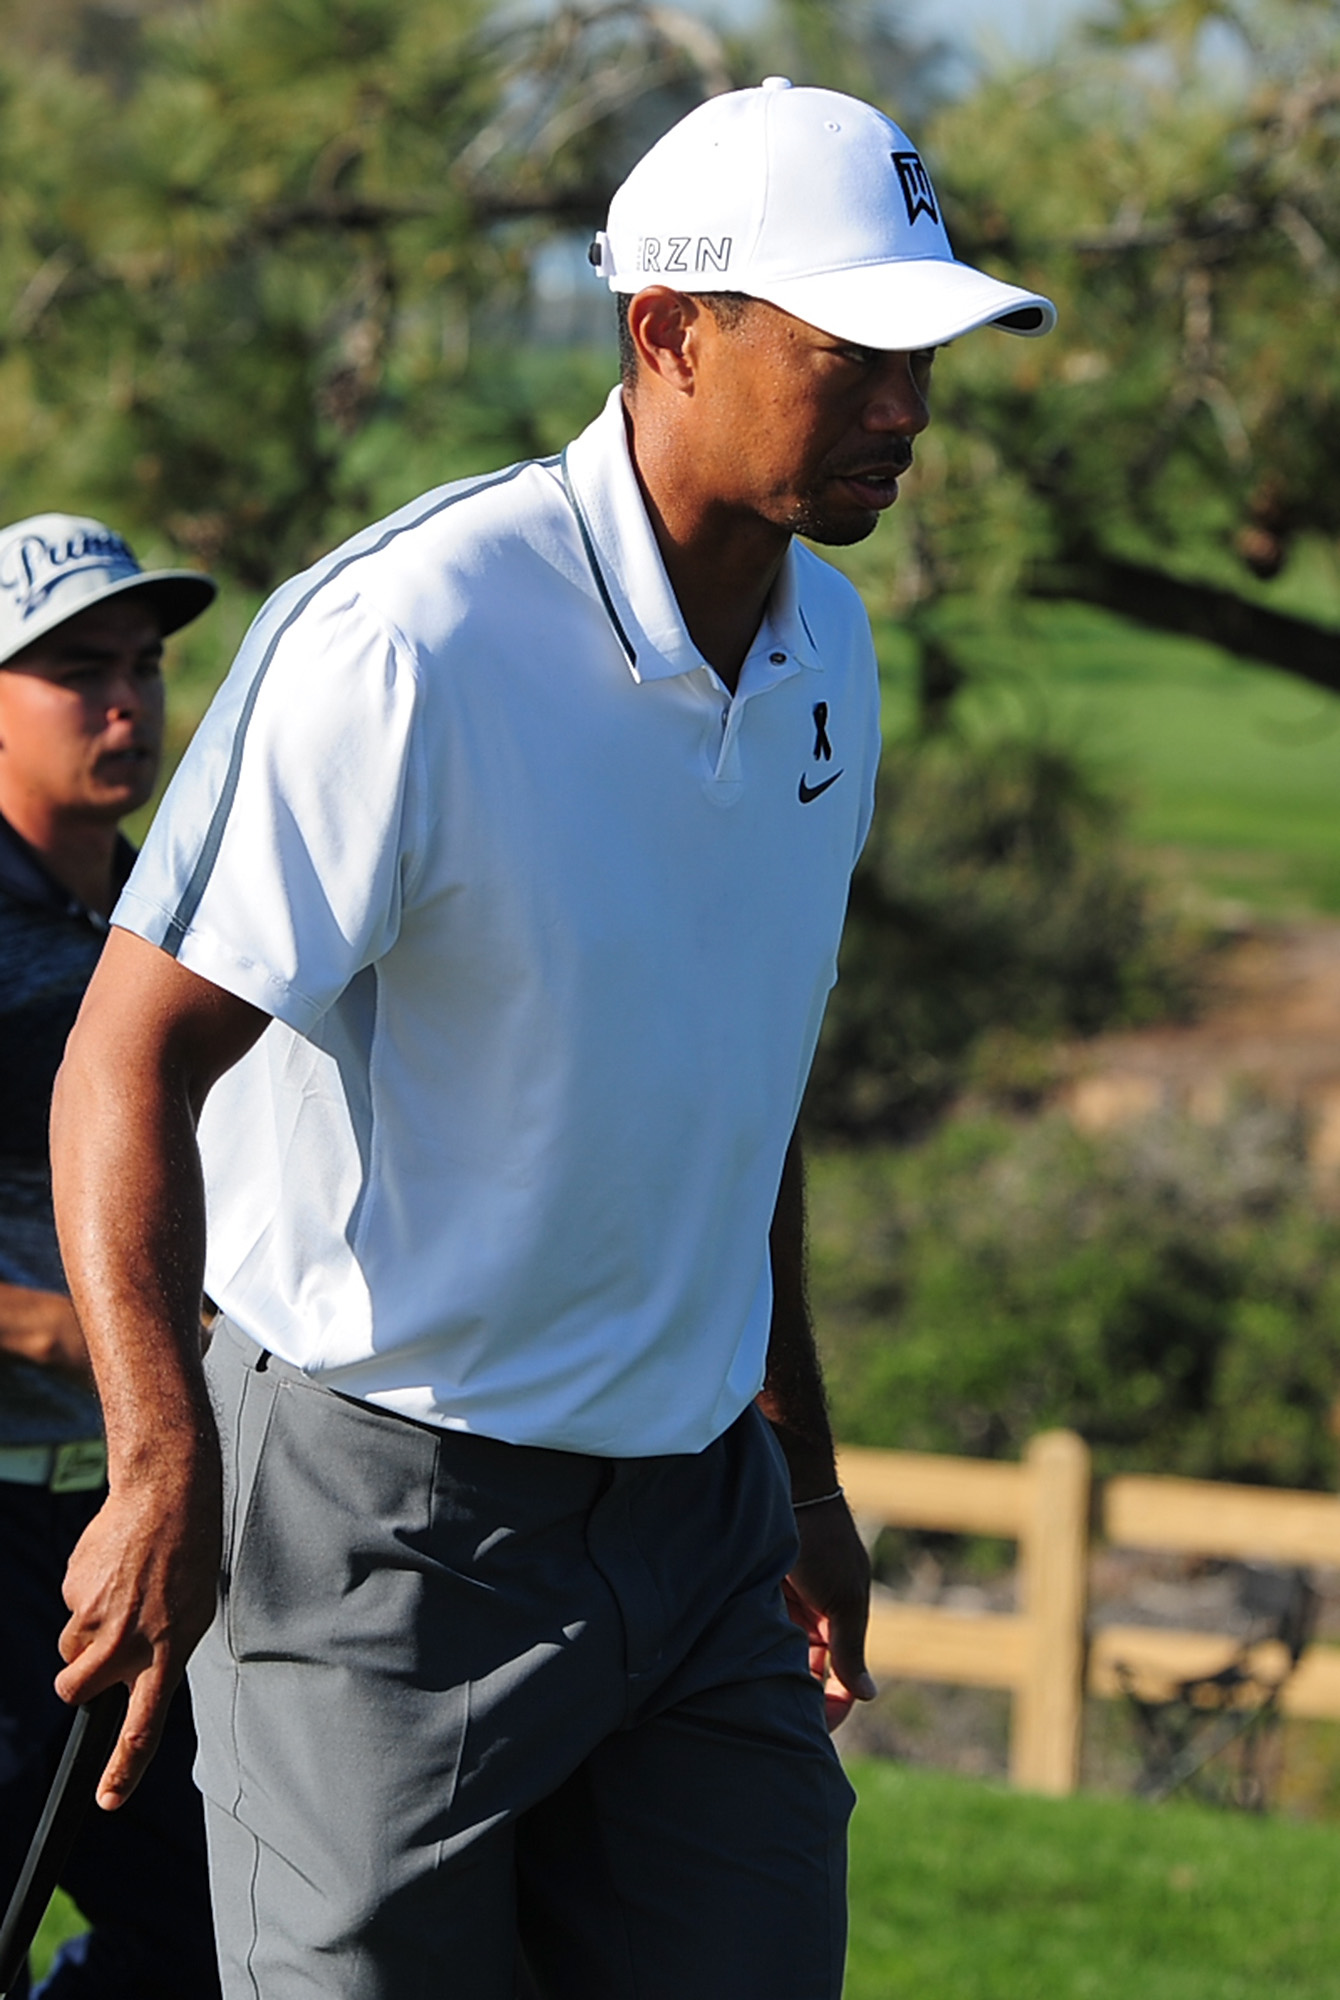 El astro estadounidense del golf Tiger Woods se retira lesionado en la espalda de un un torneo en La Jolla, EEUU, el 5 de febrero de 2015